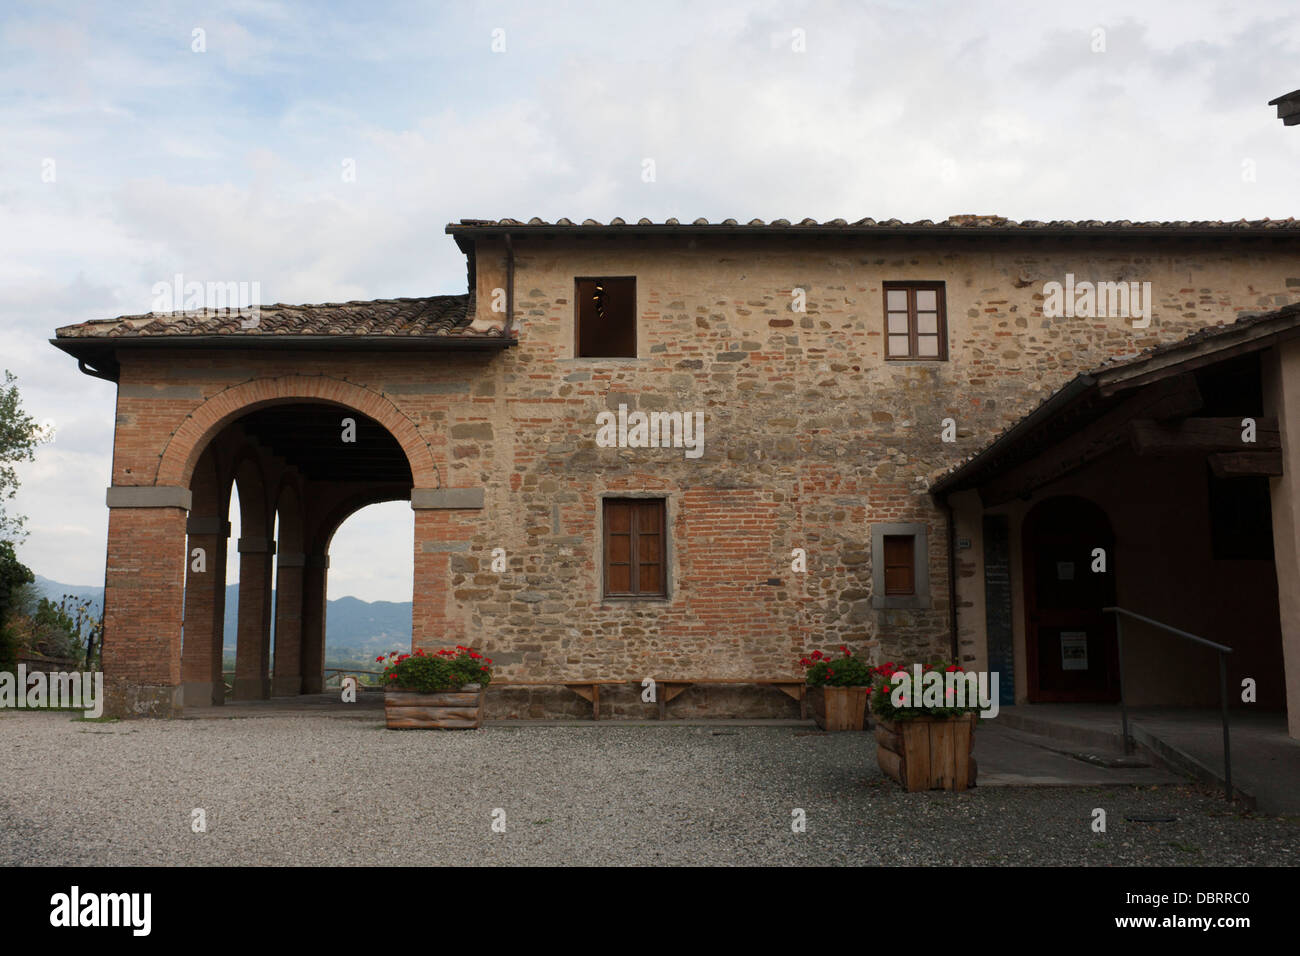 Gedenktafel an der Mauer des Casa Natale di Giotto Geburtsort von Giotto da Bondone Künstlers und Architekten Vespignano Mugello-Toskana-Italien Stockfoto